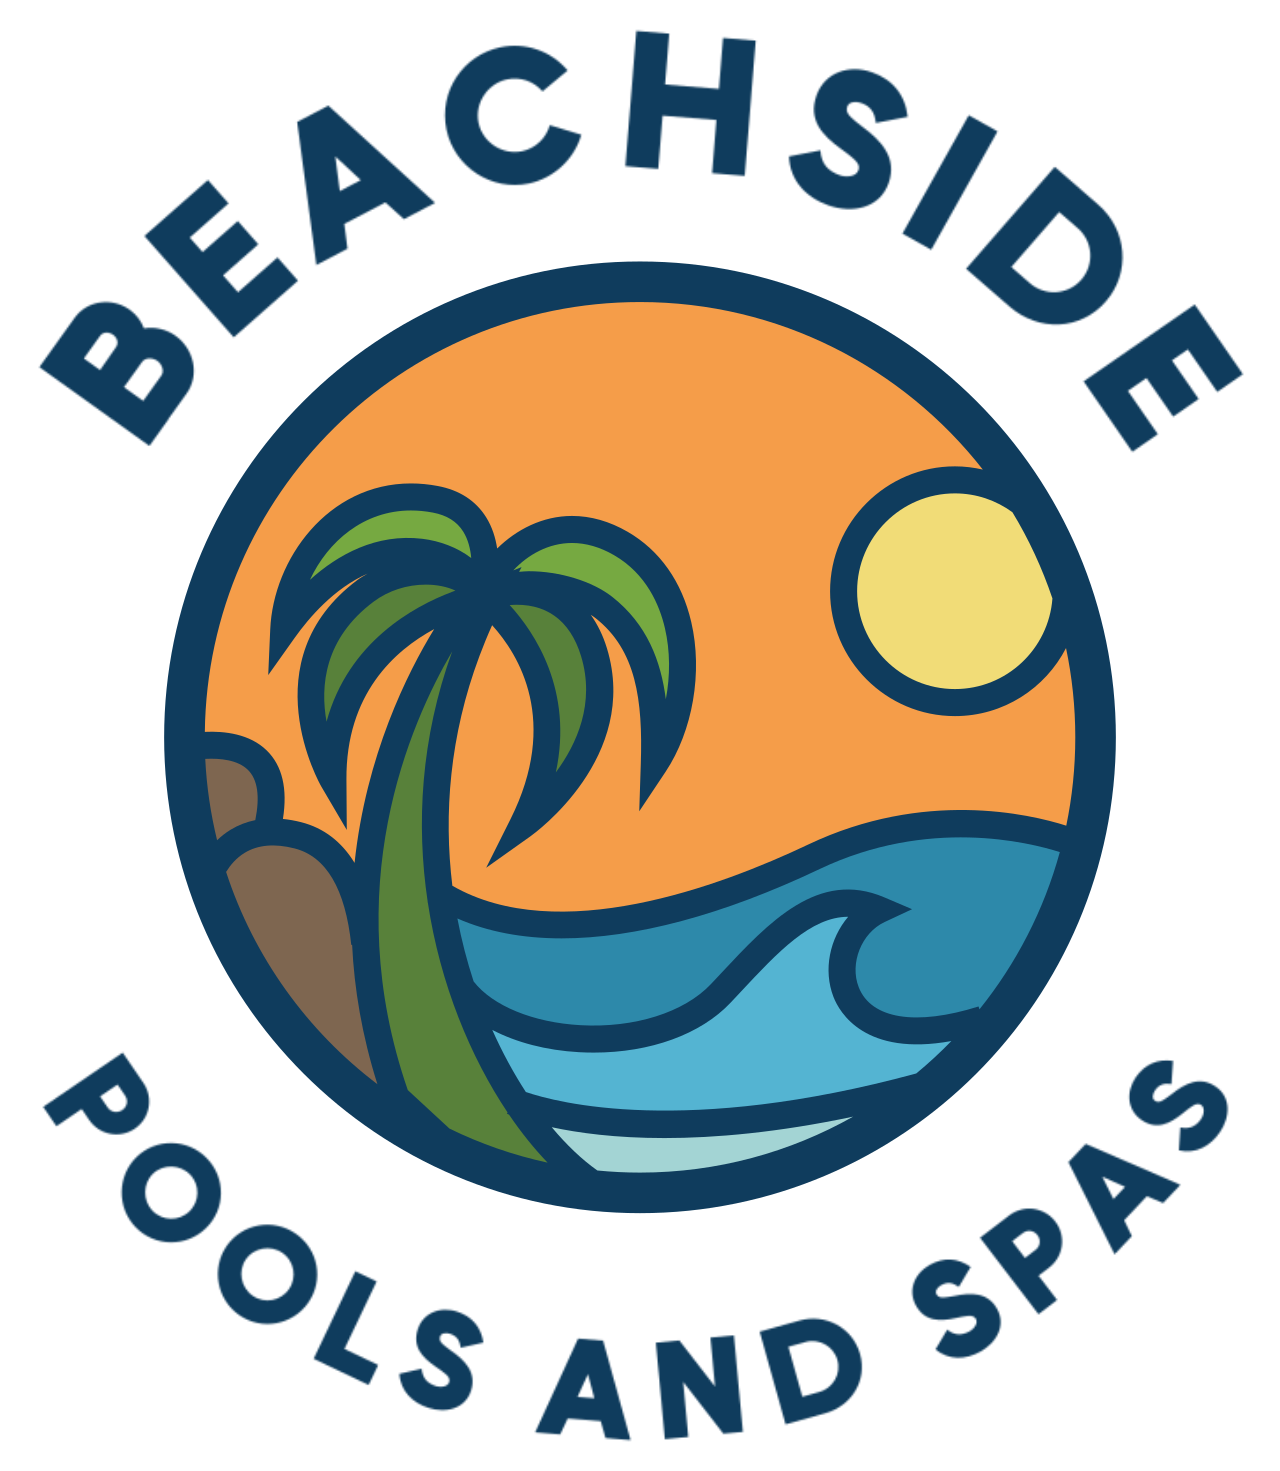 beachside's logo